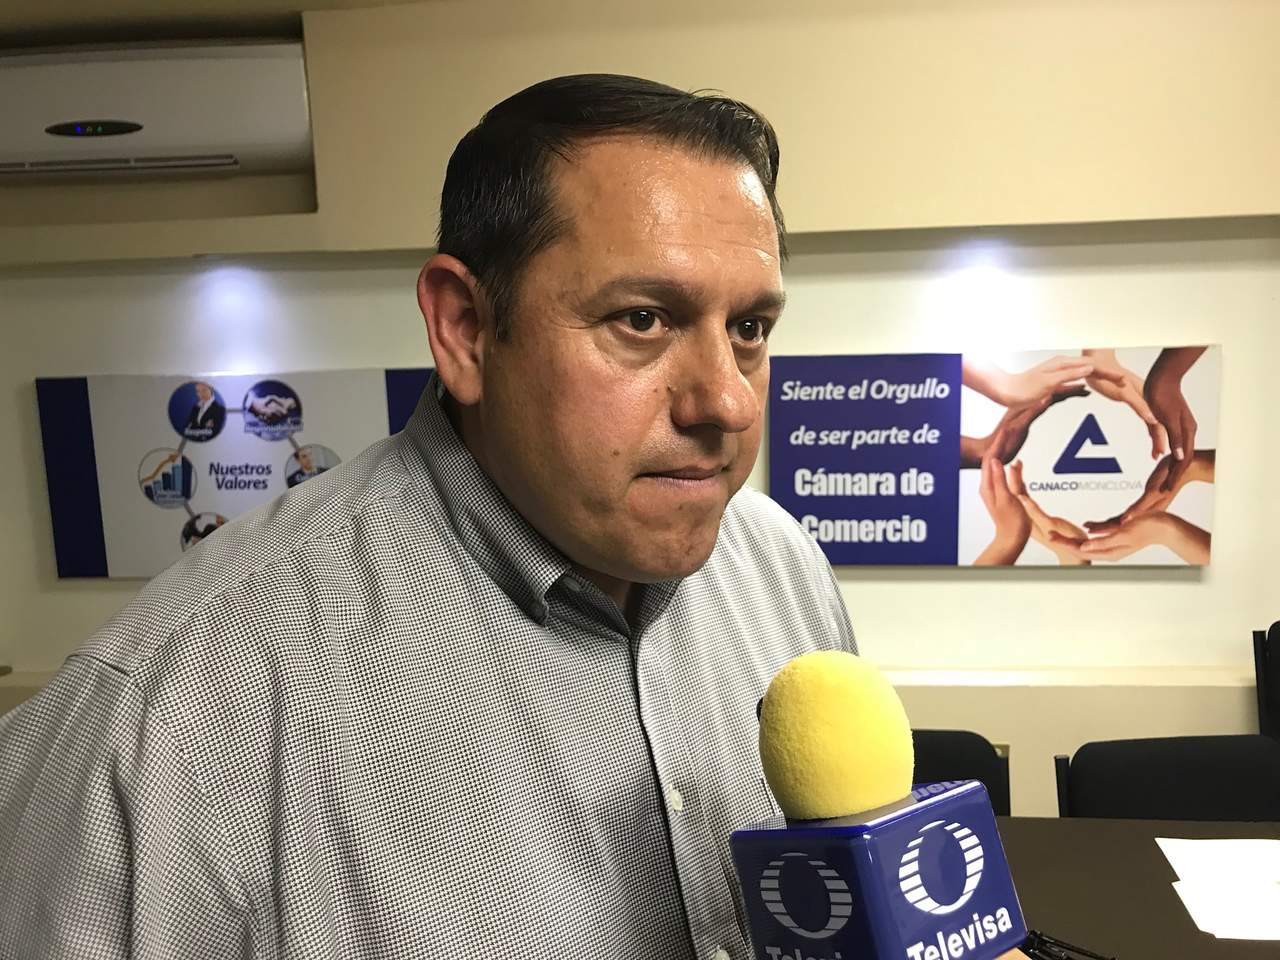 Ricardo Zertuche Martínez, presidente de Canaco Monclova, lanzó una alerta por la presencia de billetes falsos en Monclova, pero ni la FGE ni la PGR tienen conocimiento de estos hechos.